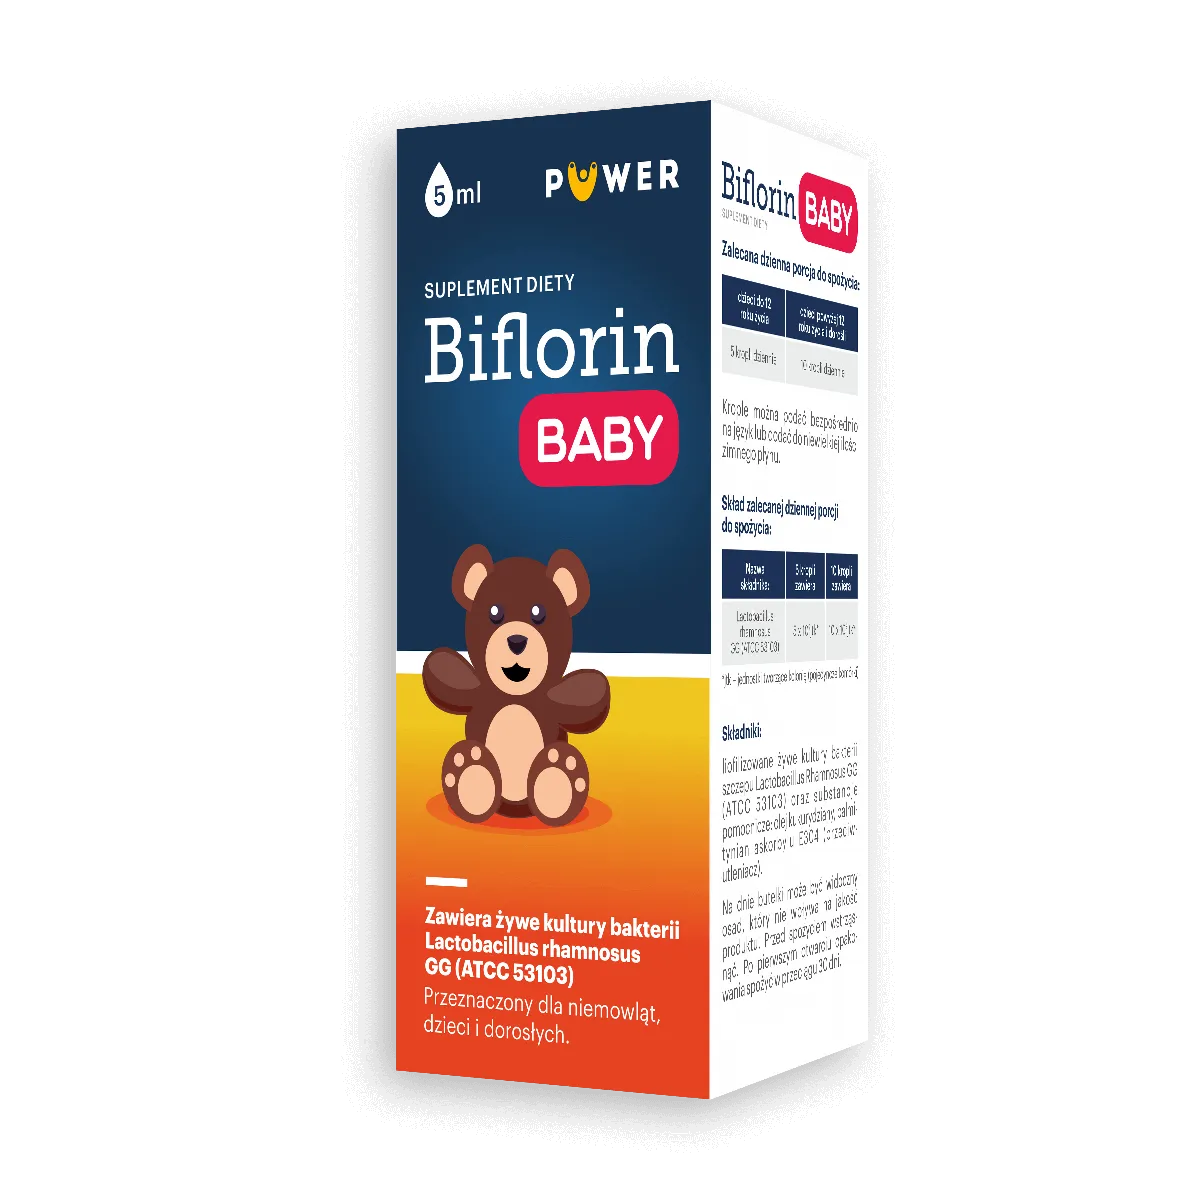 Biflorin IGG Baby, suplement diety, 5 ml